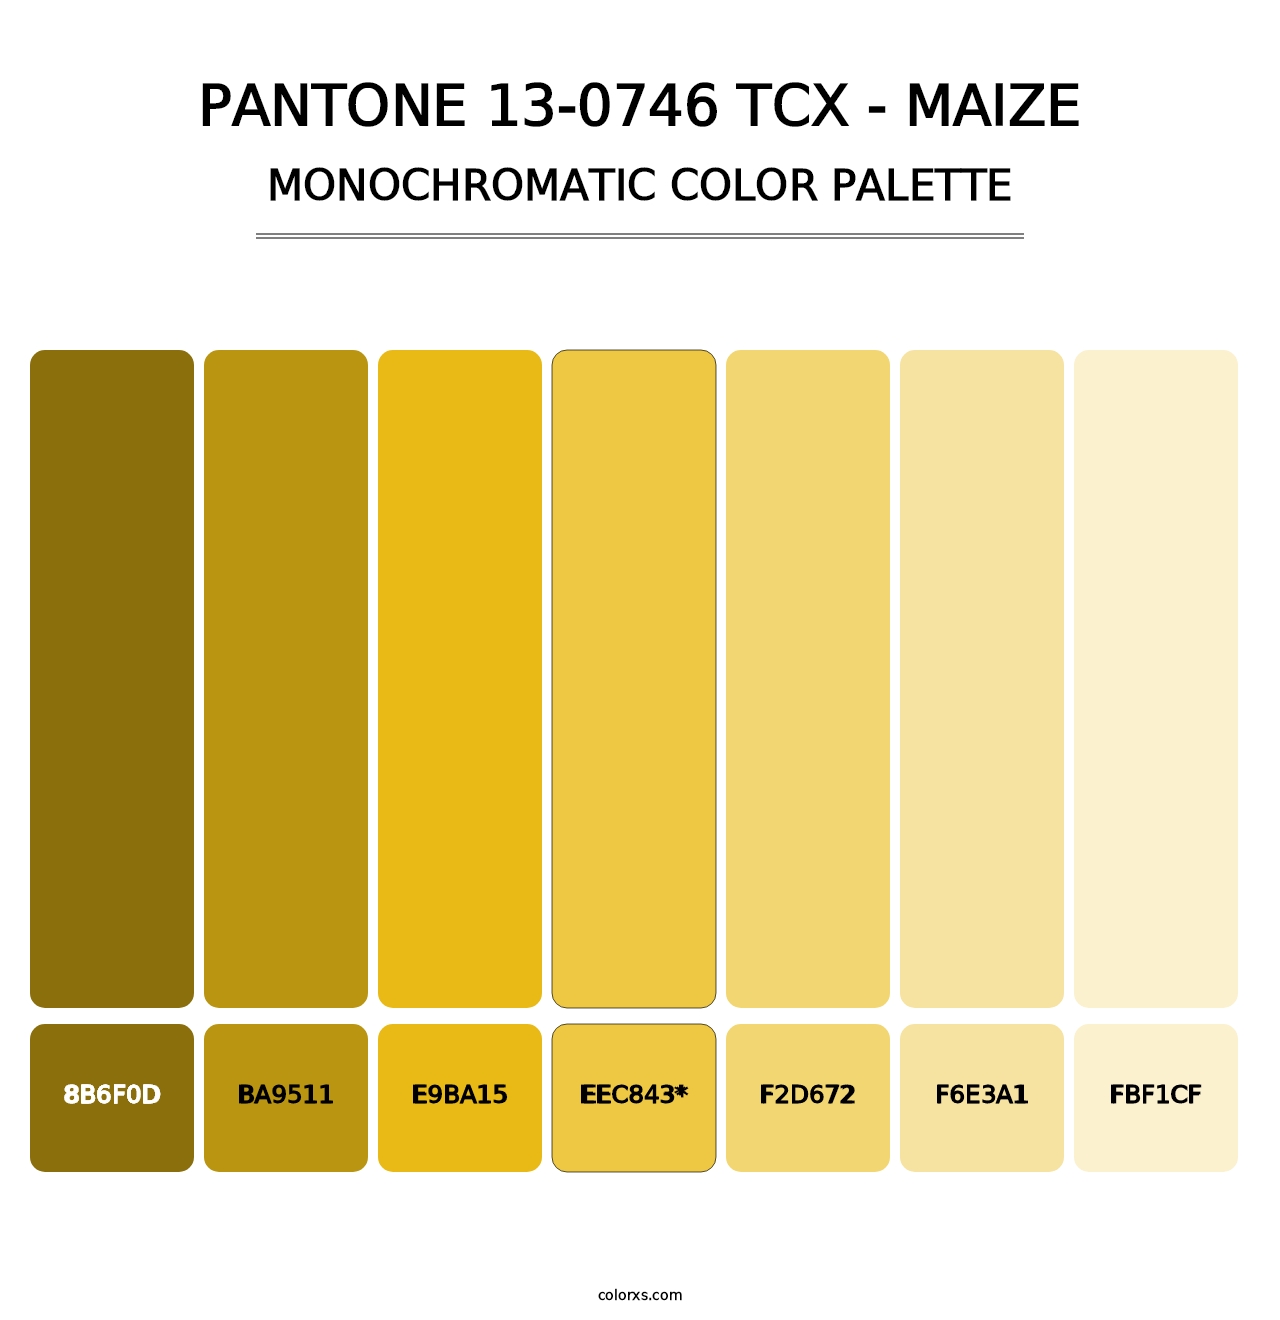 PANTONE 13-0746 TCX - Maize - Monochromatic Color Palette